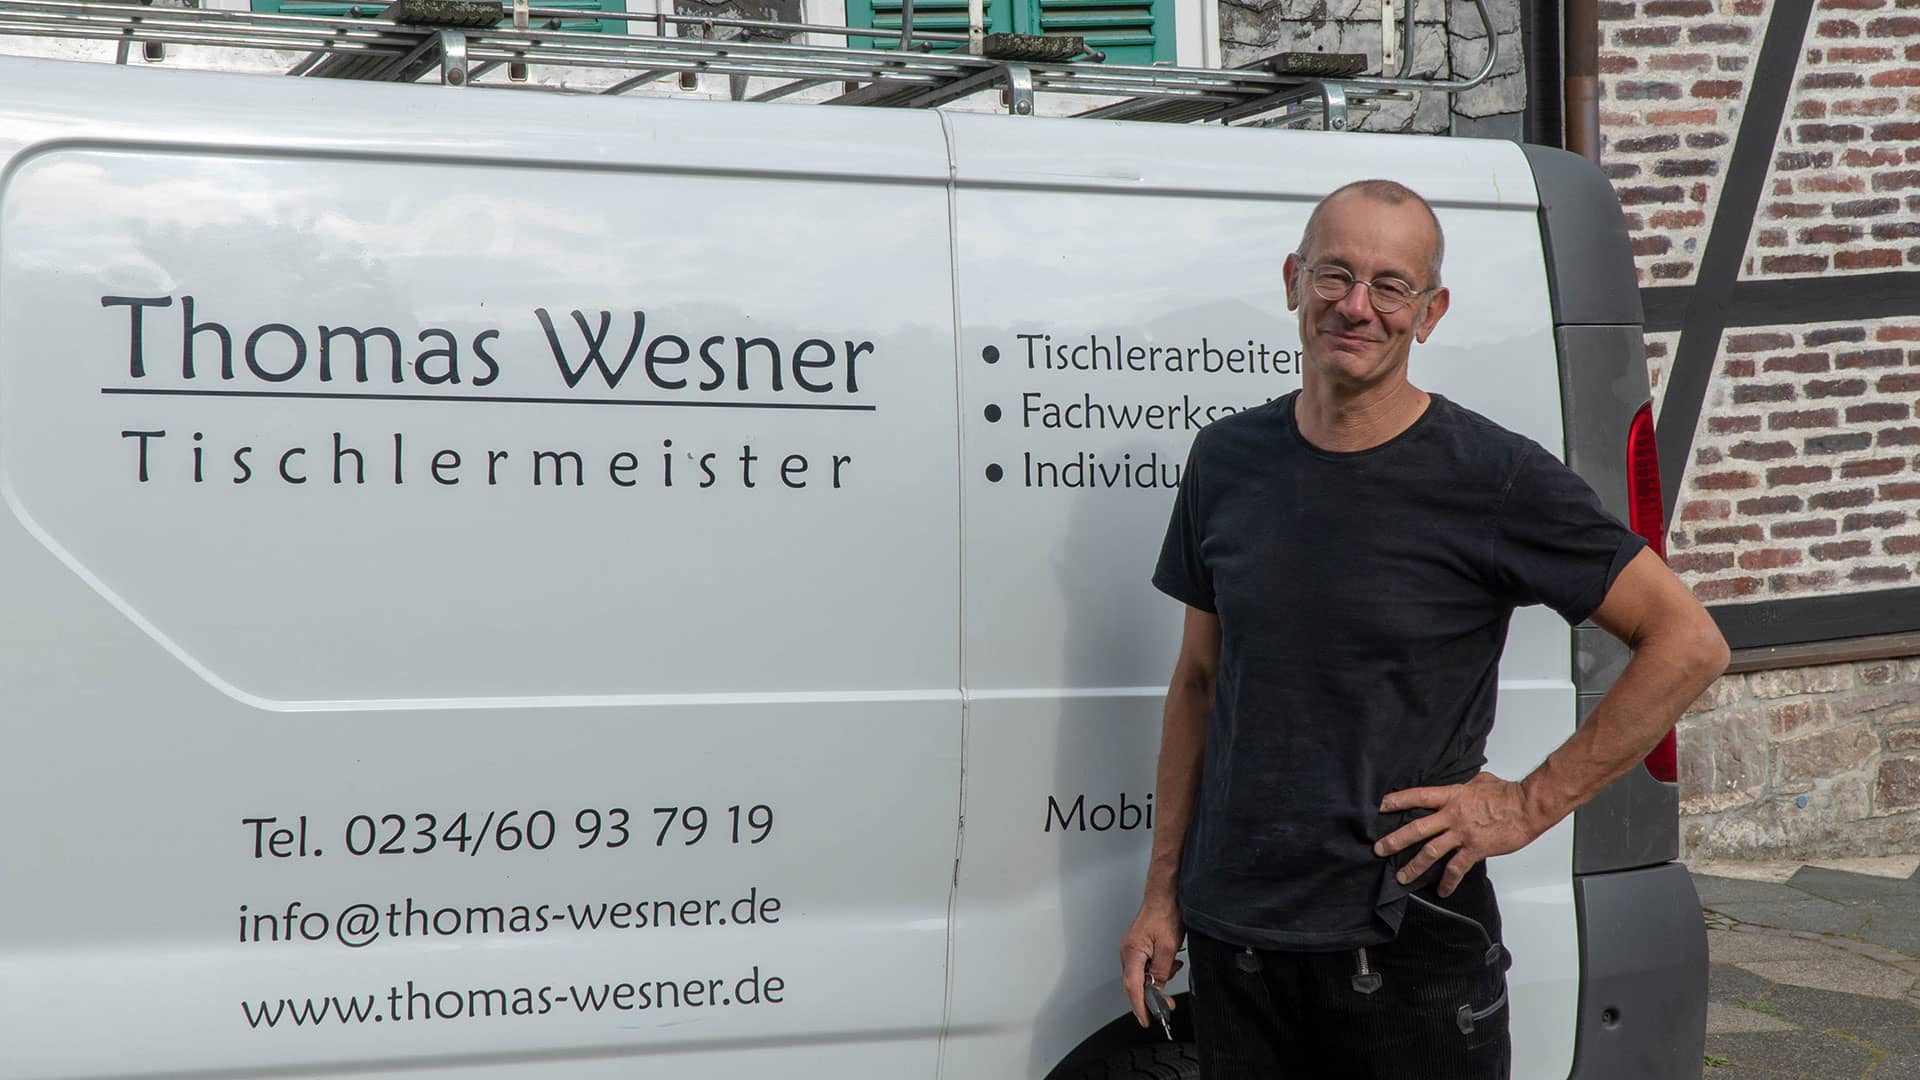 Thomas Wesner vor seinem Firmenfahrzeug